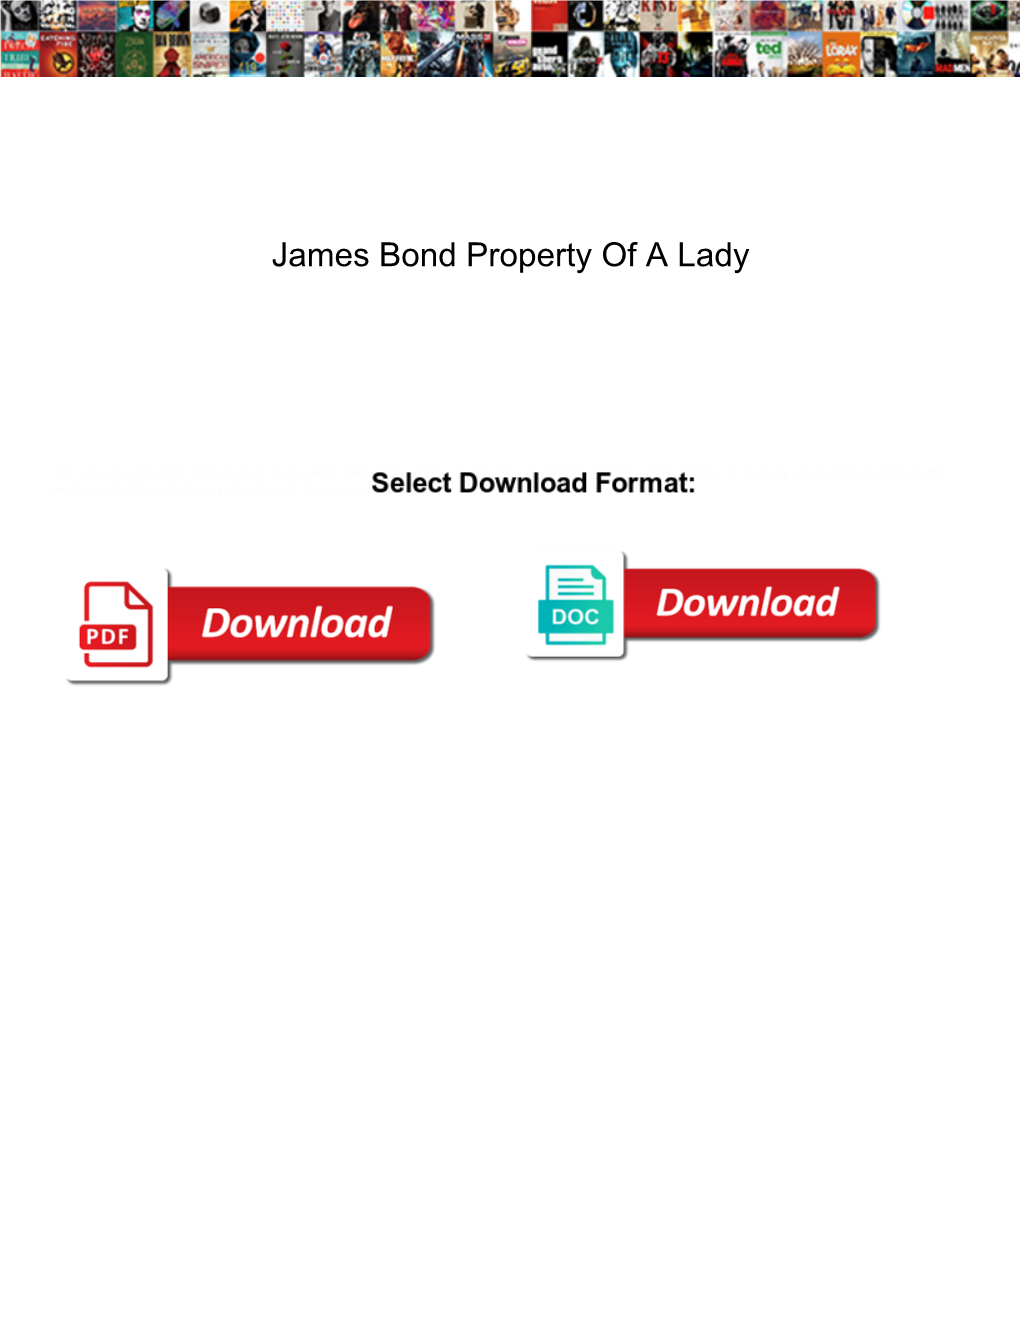 James Bond Property of a Lady